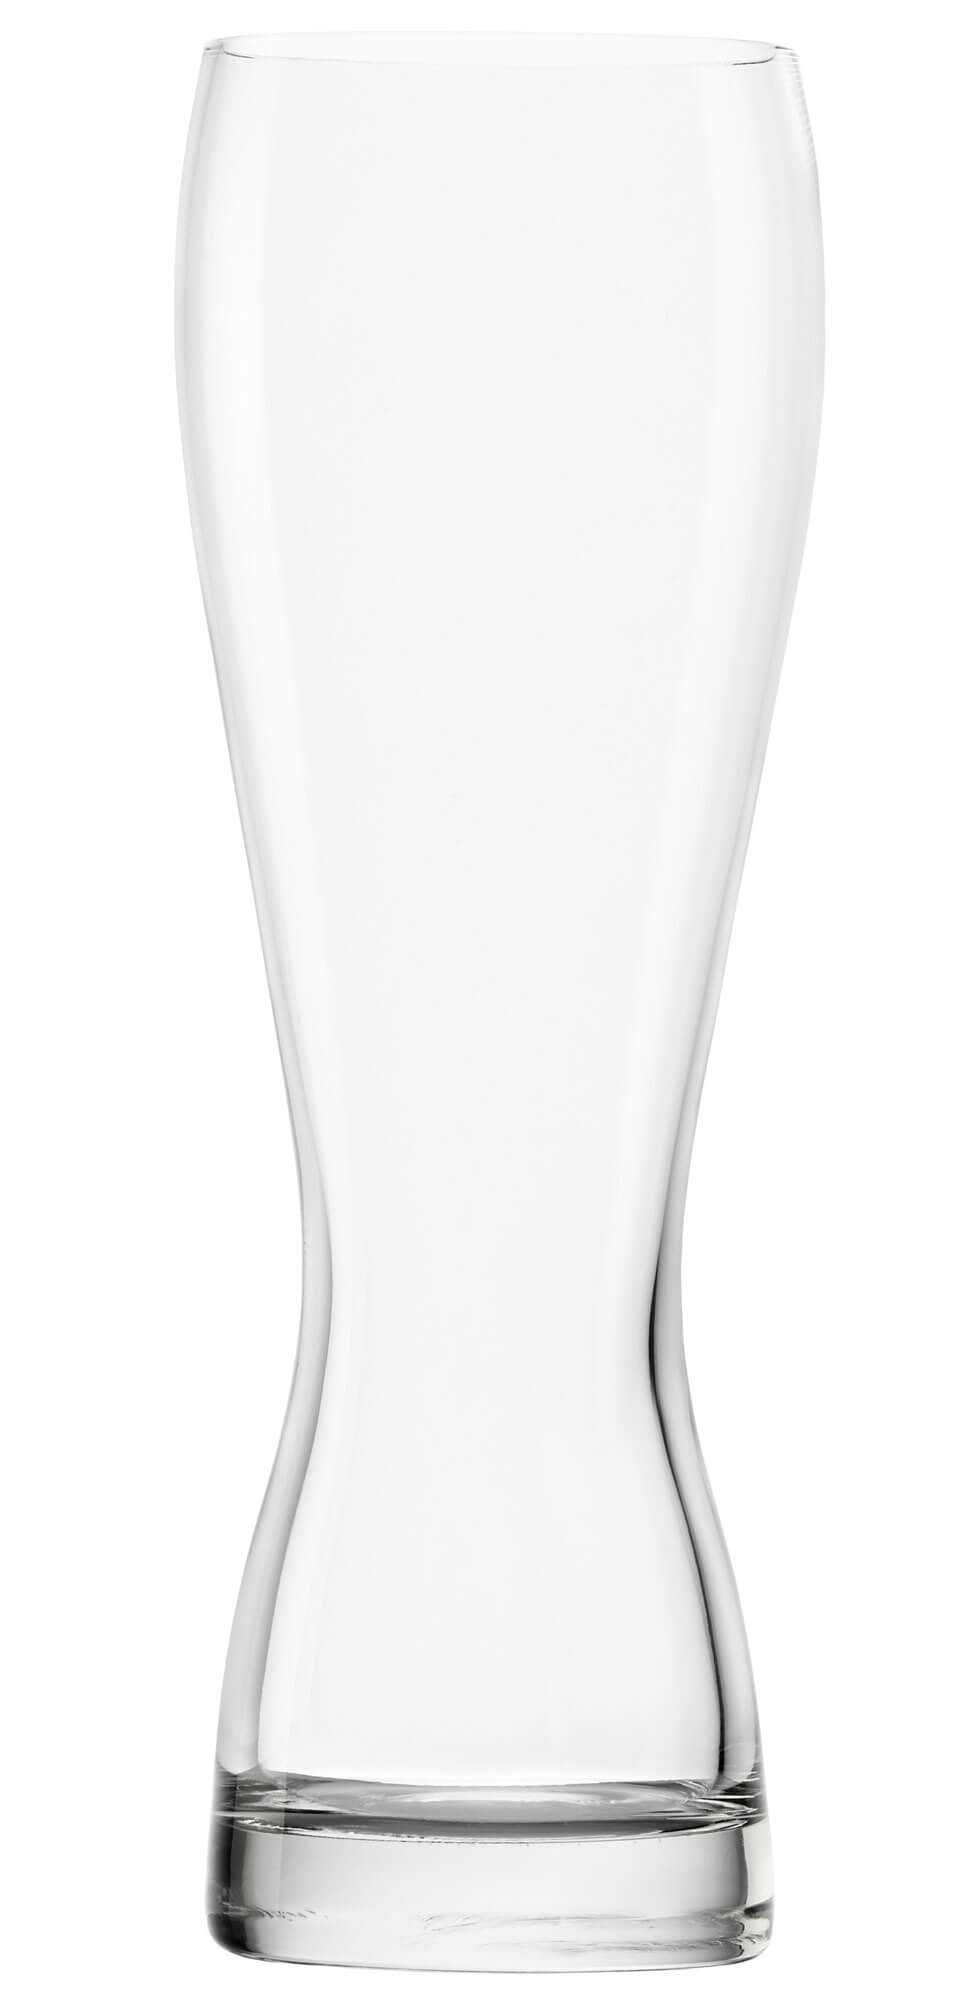 Weizenbierglas, Stölzle - 670ml